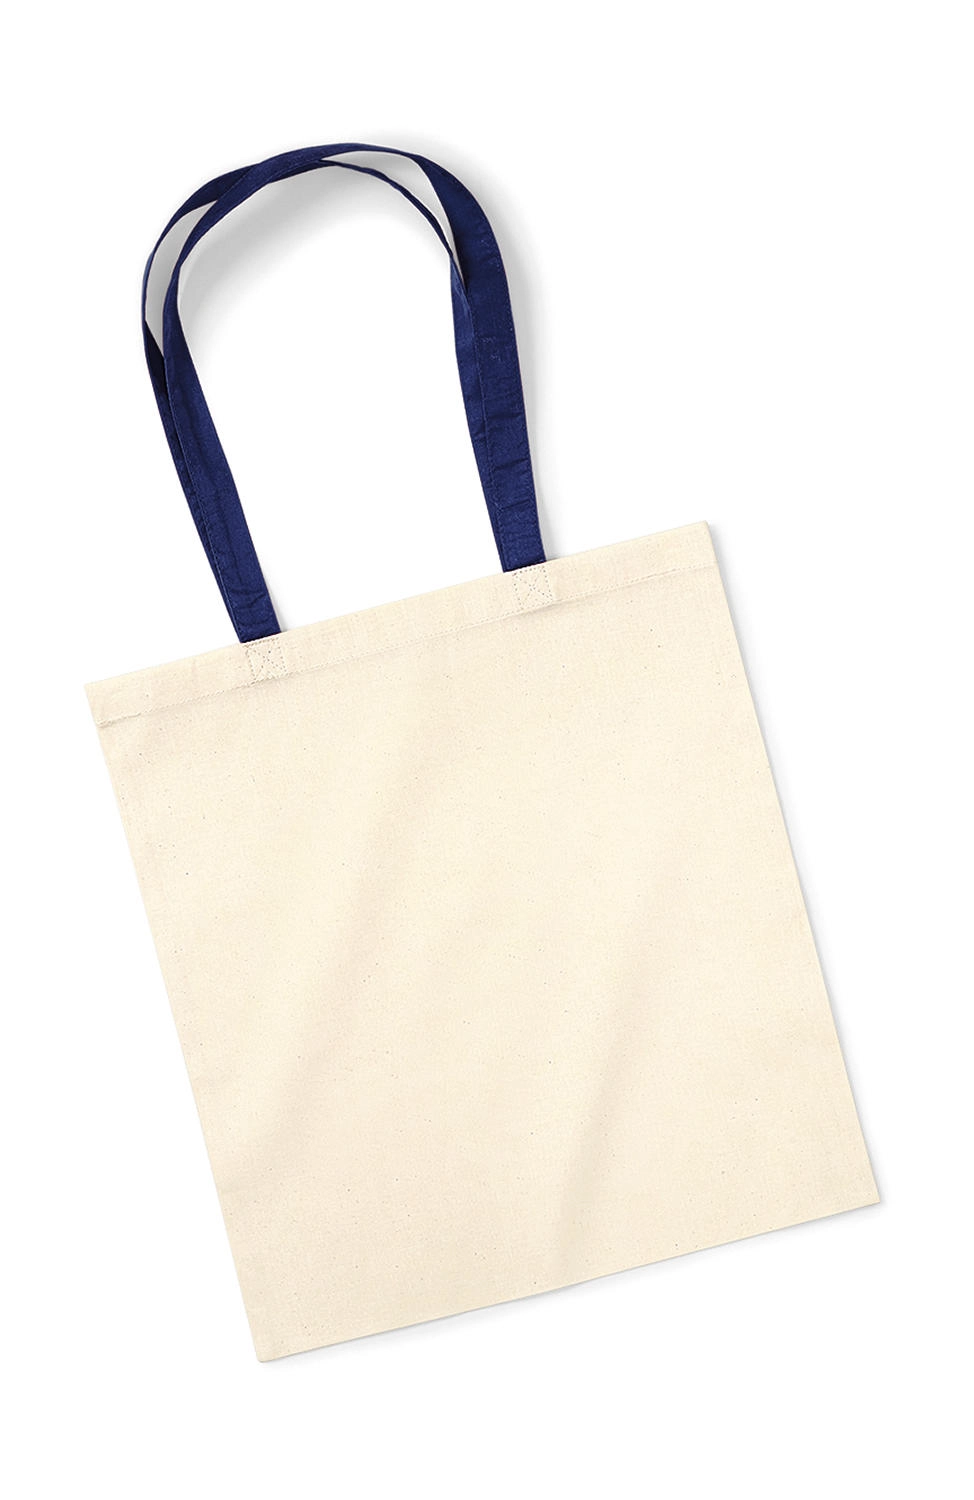 Bag for Life - Contrast Handles zum Besticken und Bedrucken in der Farbe Natural/French Navy mit Ihren Logo, Schriftzug oder Motiv.